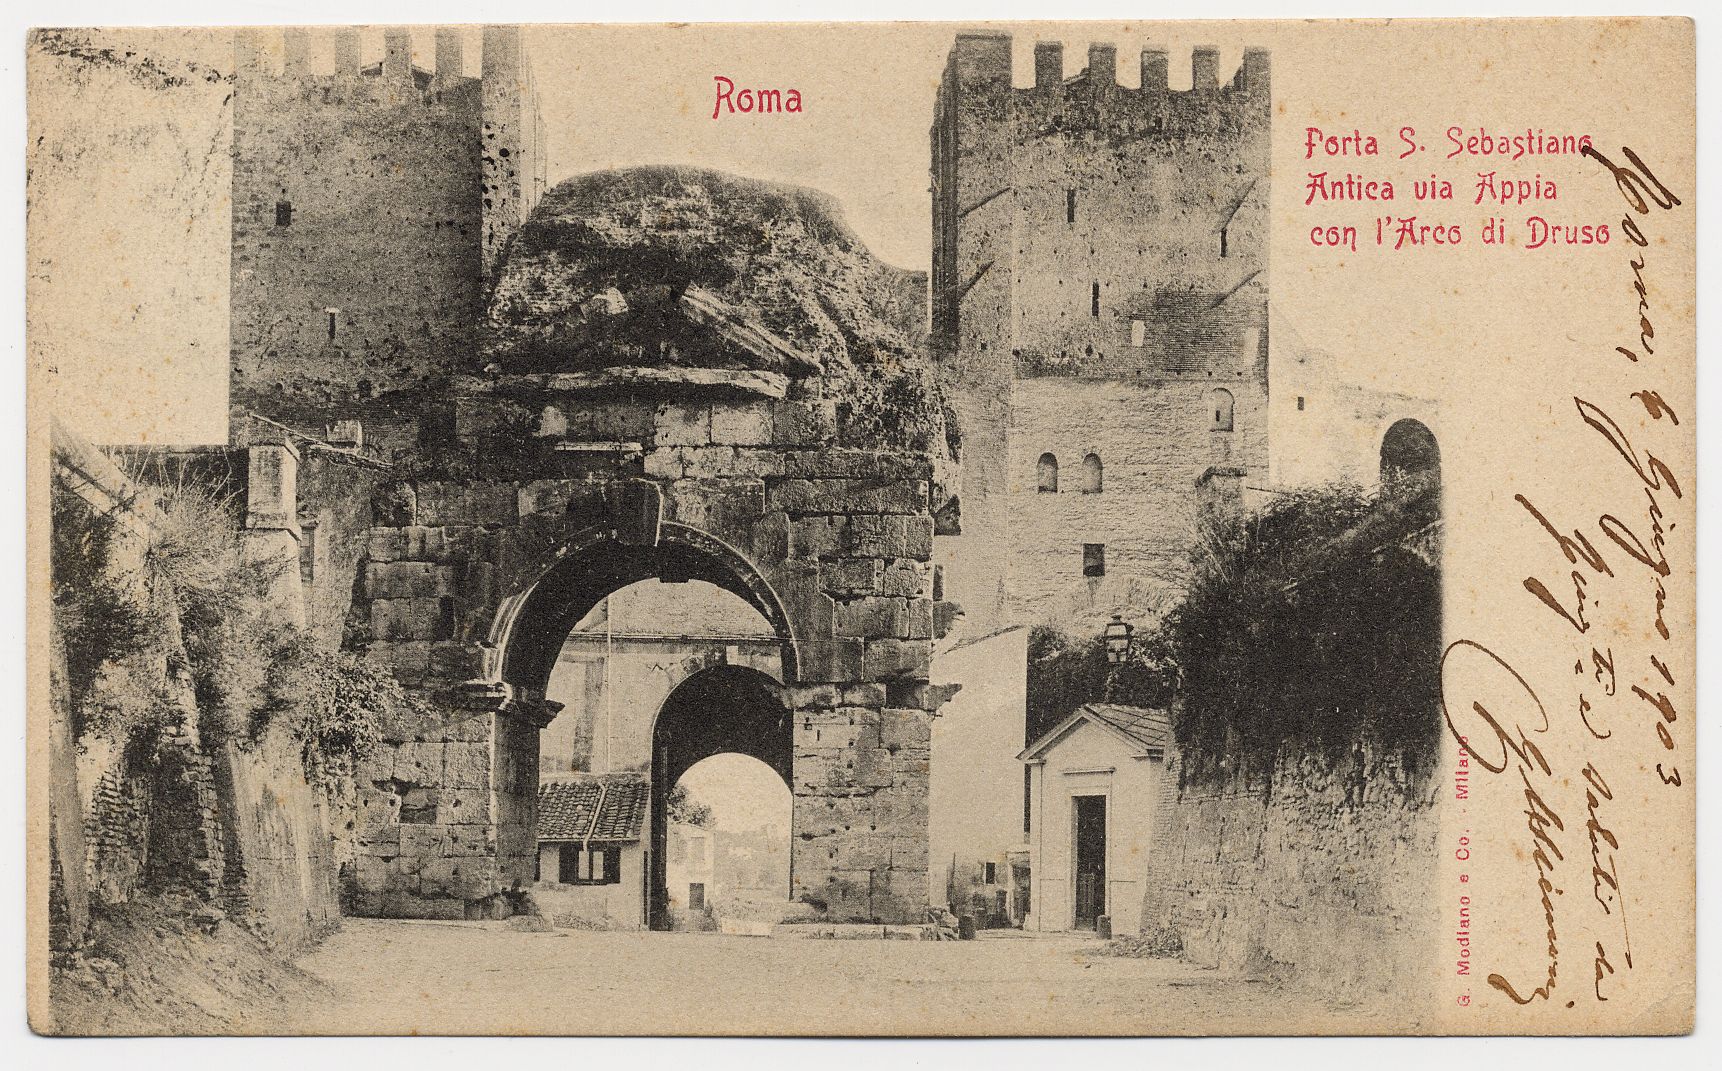 Cartolina con immagine di Porta S. Sebastiano e Arco di Druso